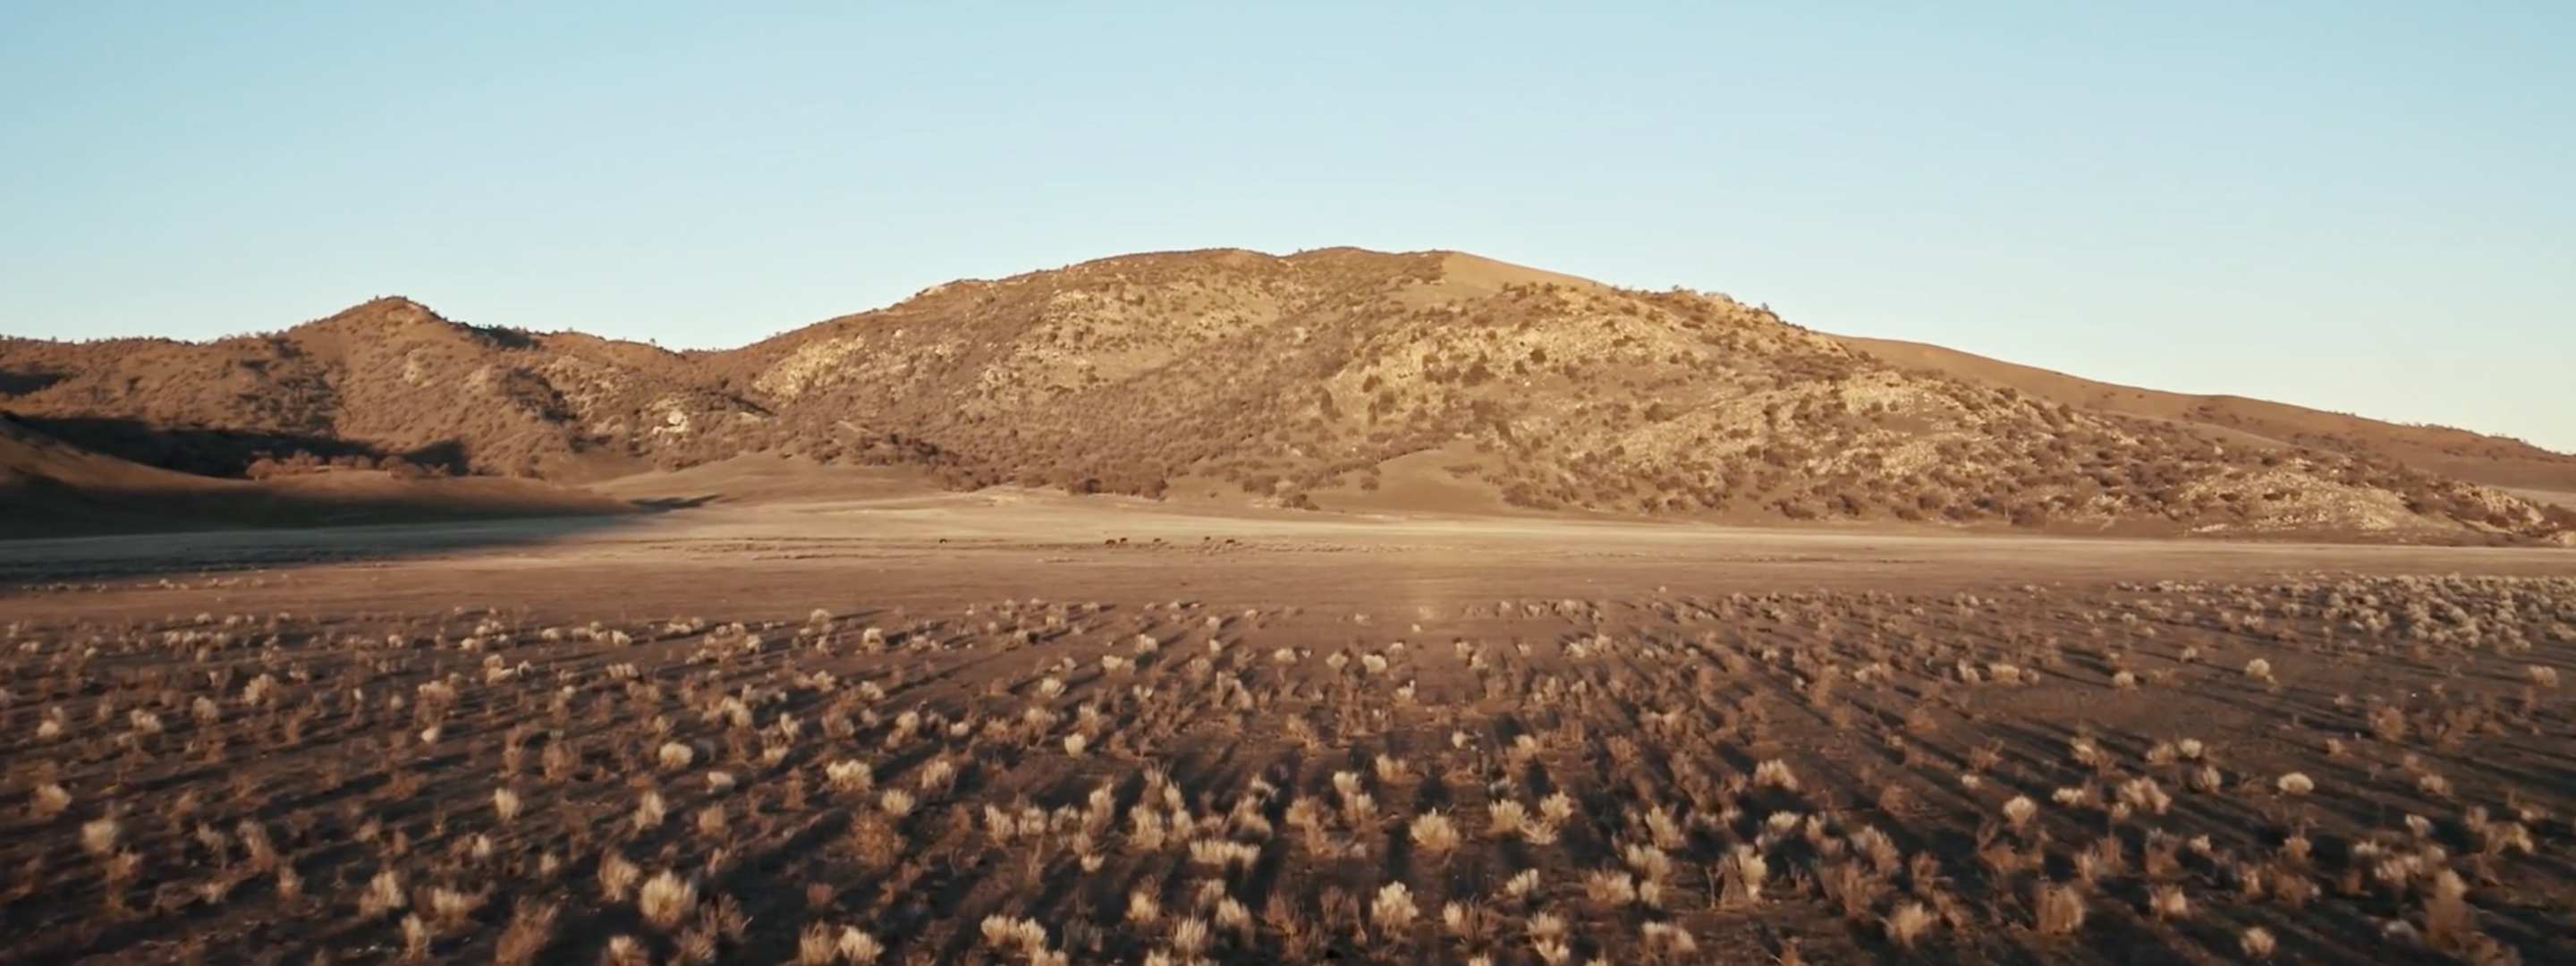 <a href="https://www.capgemini.com/news/inside-stories/mojave-desert/"></a><a href="https://www.capgemini.com/dk-en/news/inside-stories/mojave-desert/">The Mojave Desert: Data for tortoises and tires</a>